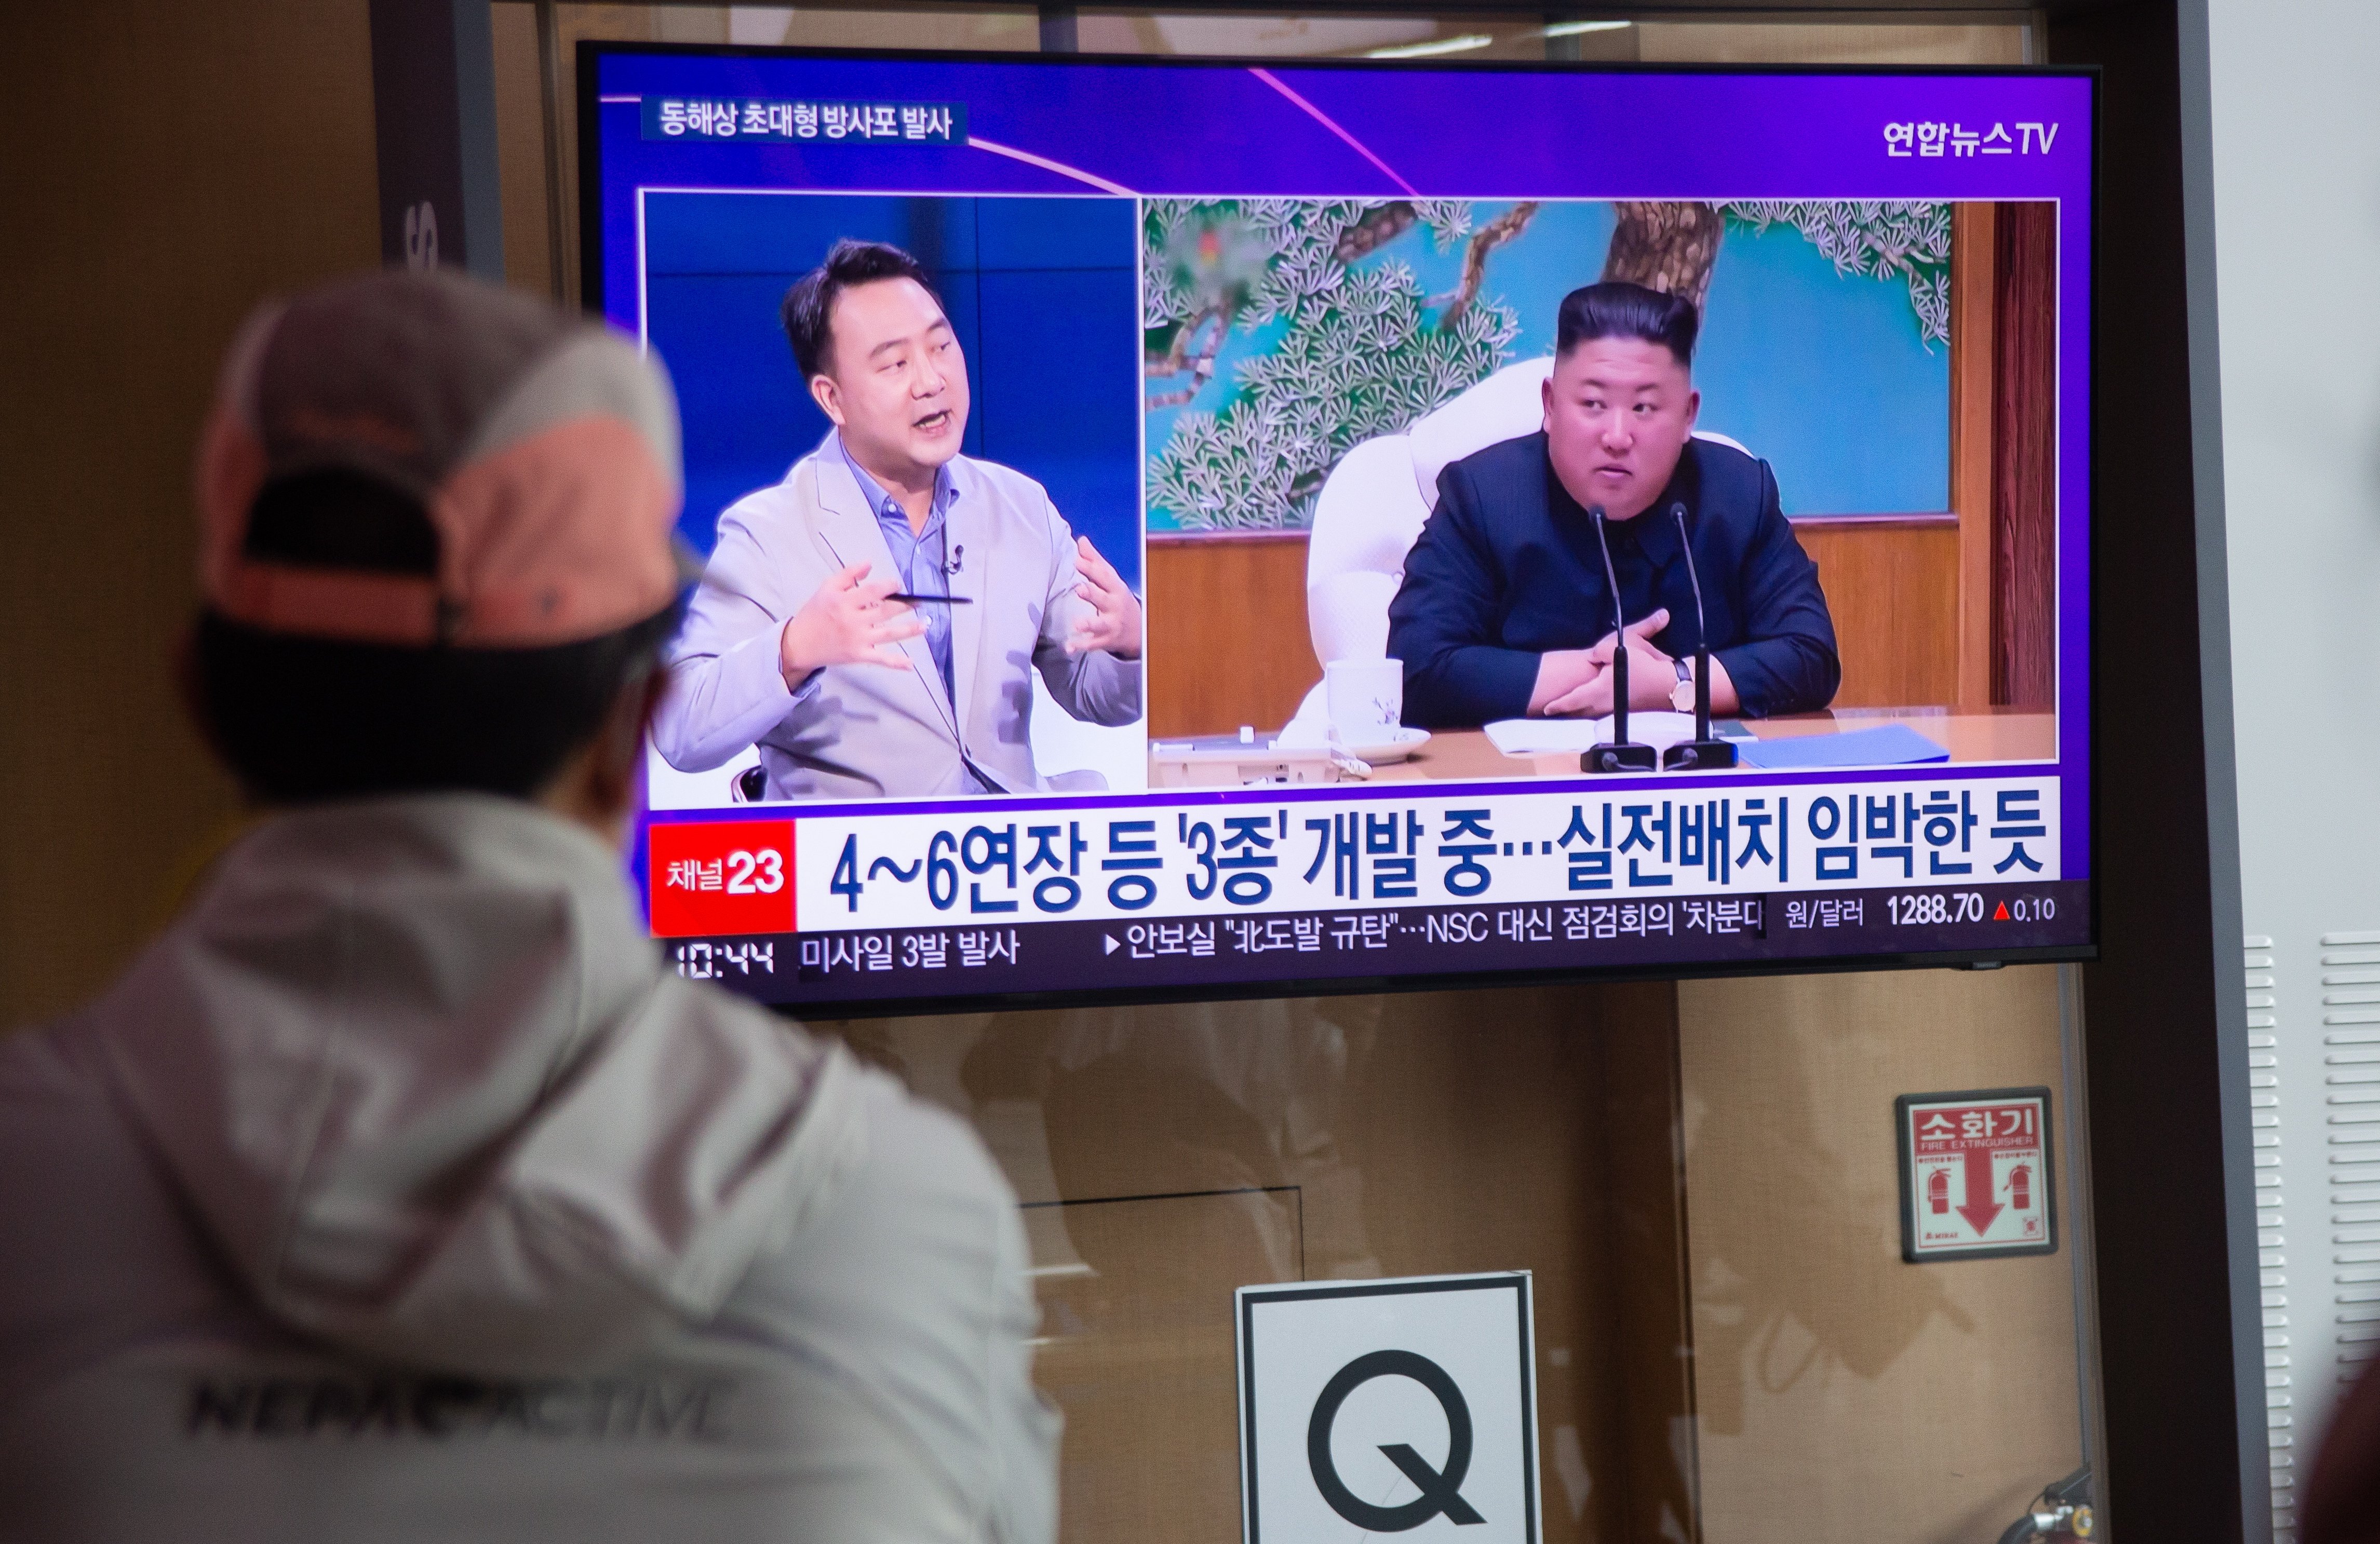 Seül mobilitza l'exèrcit: Corea del Nord en torna a fer de les seves